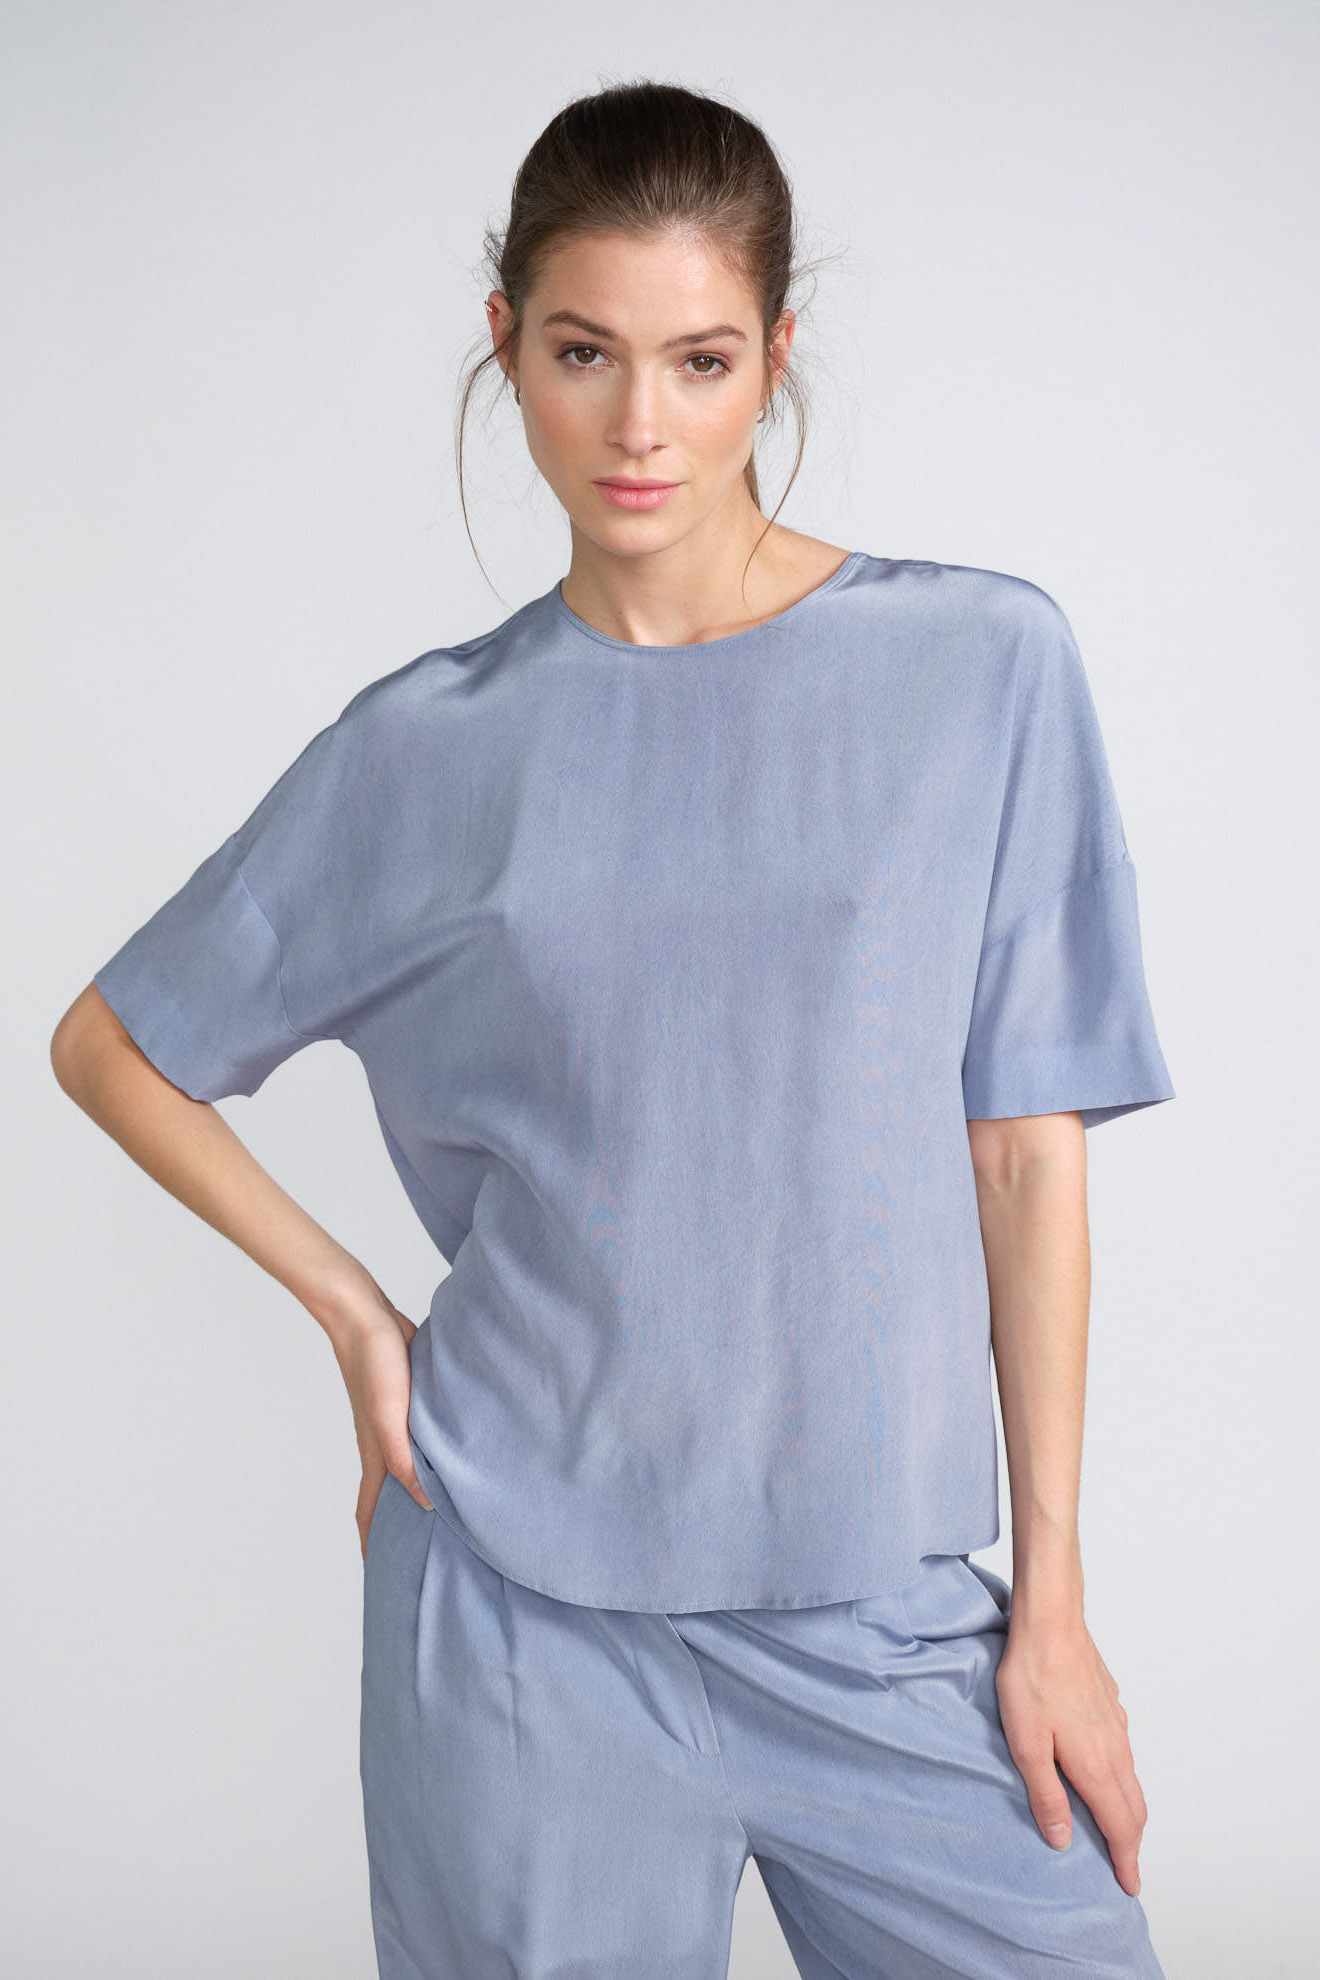 iris von Arnim blouse blue plain silk model front